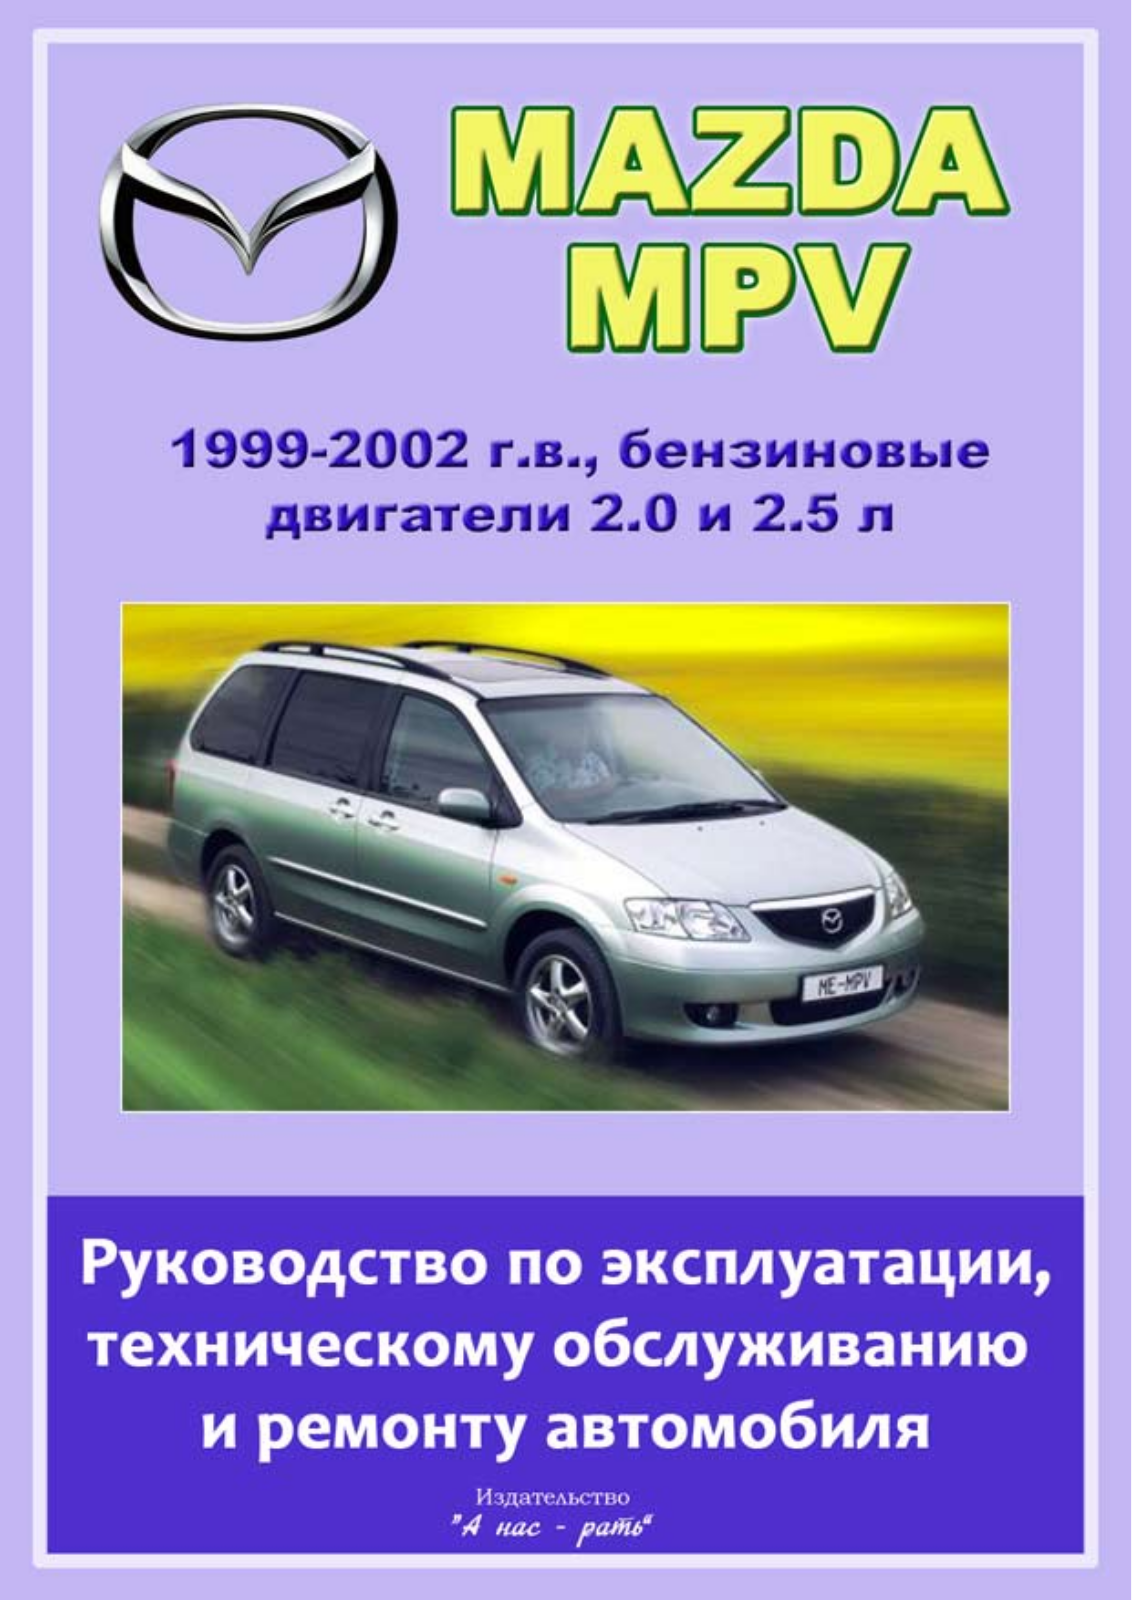 Mazda MPV 1999-2002 User Manual